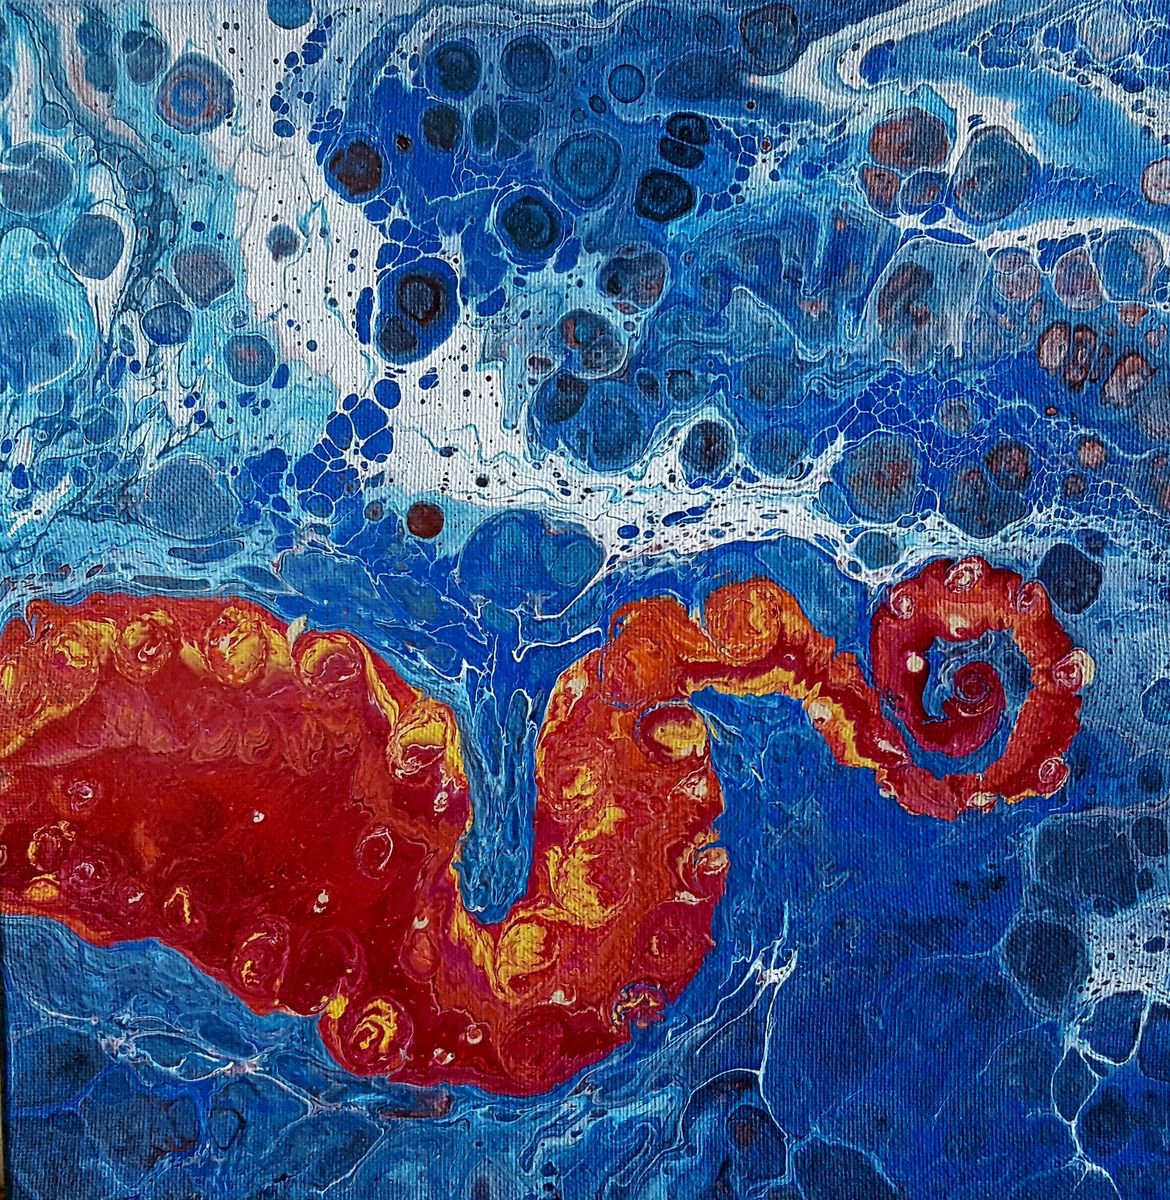 Calamari by Cathy Maiorano